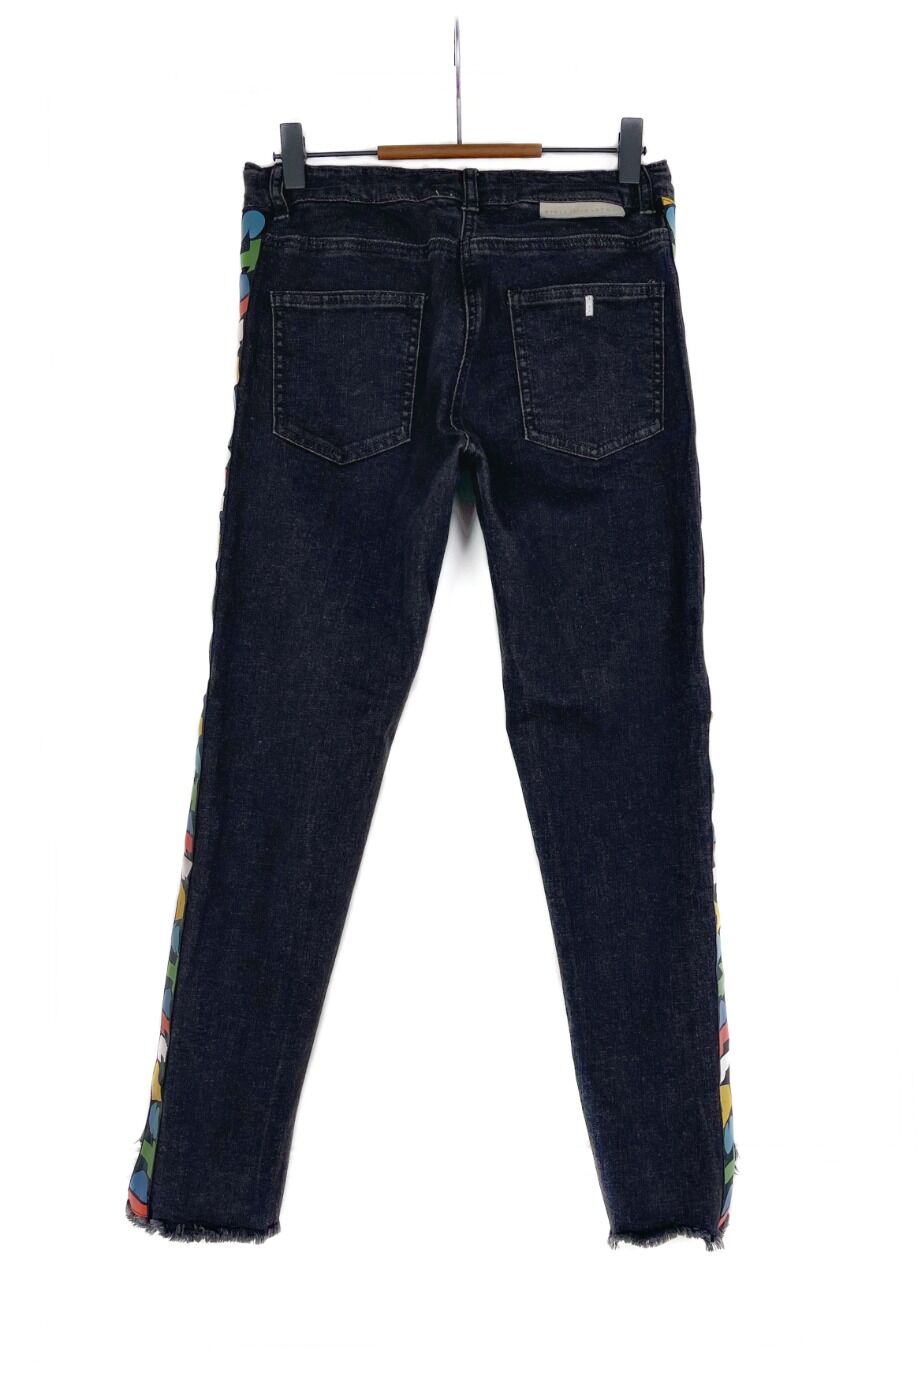 image 2 Детские джинсы темно-серого цвета с надписями на лампасах